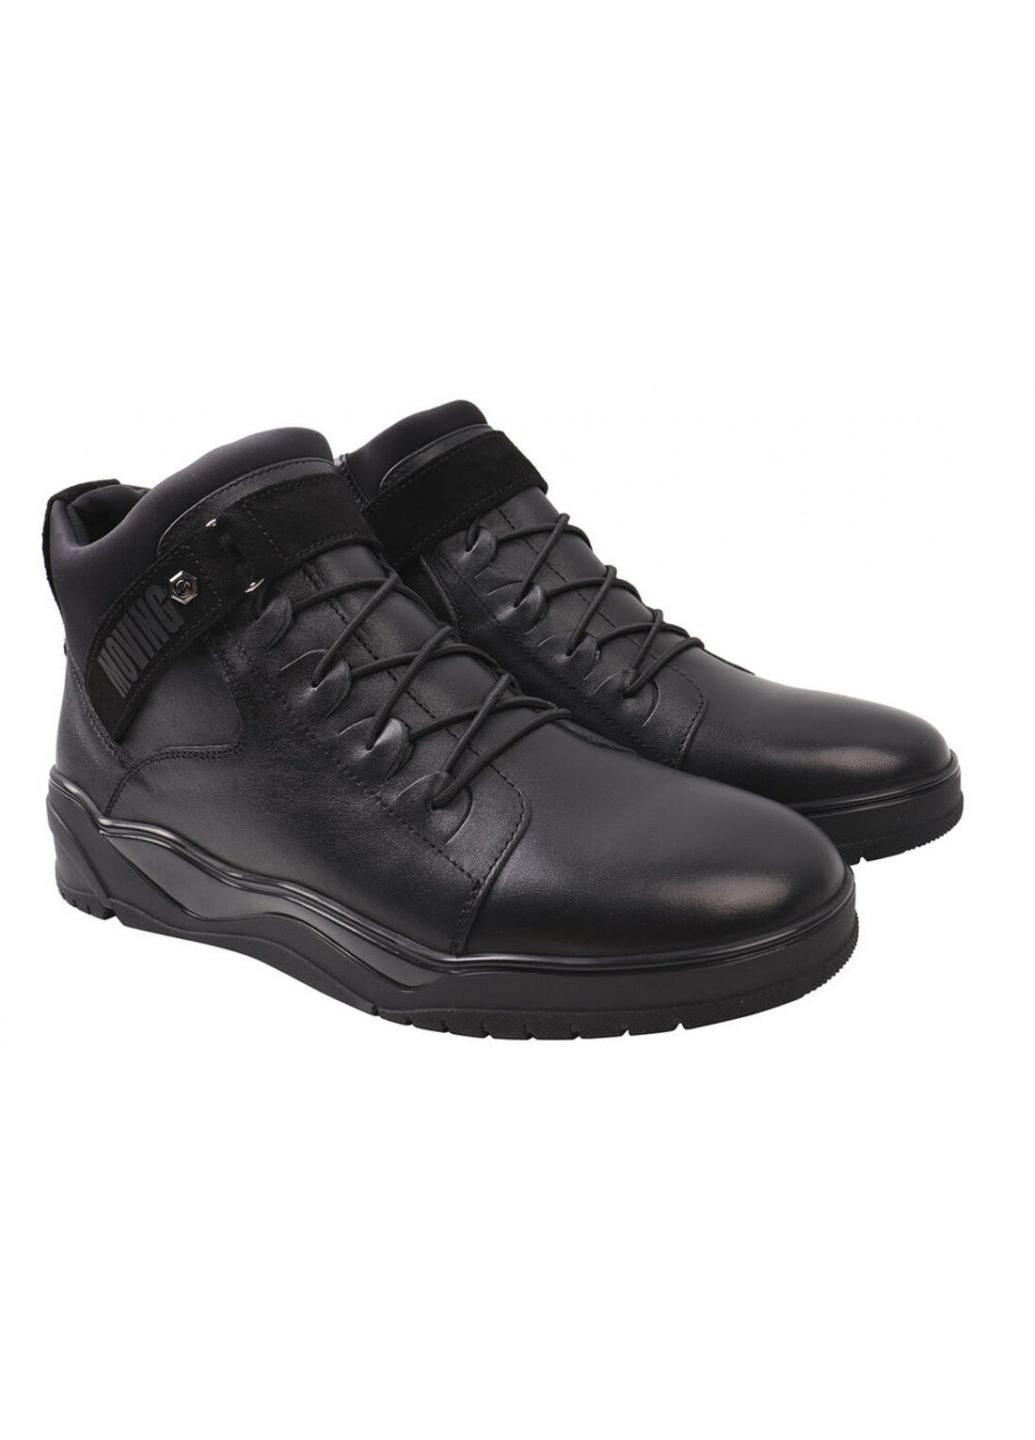 Черные ботинки мужские високие из натуральной кожы,черные, украина Zumer